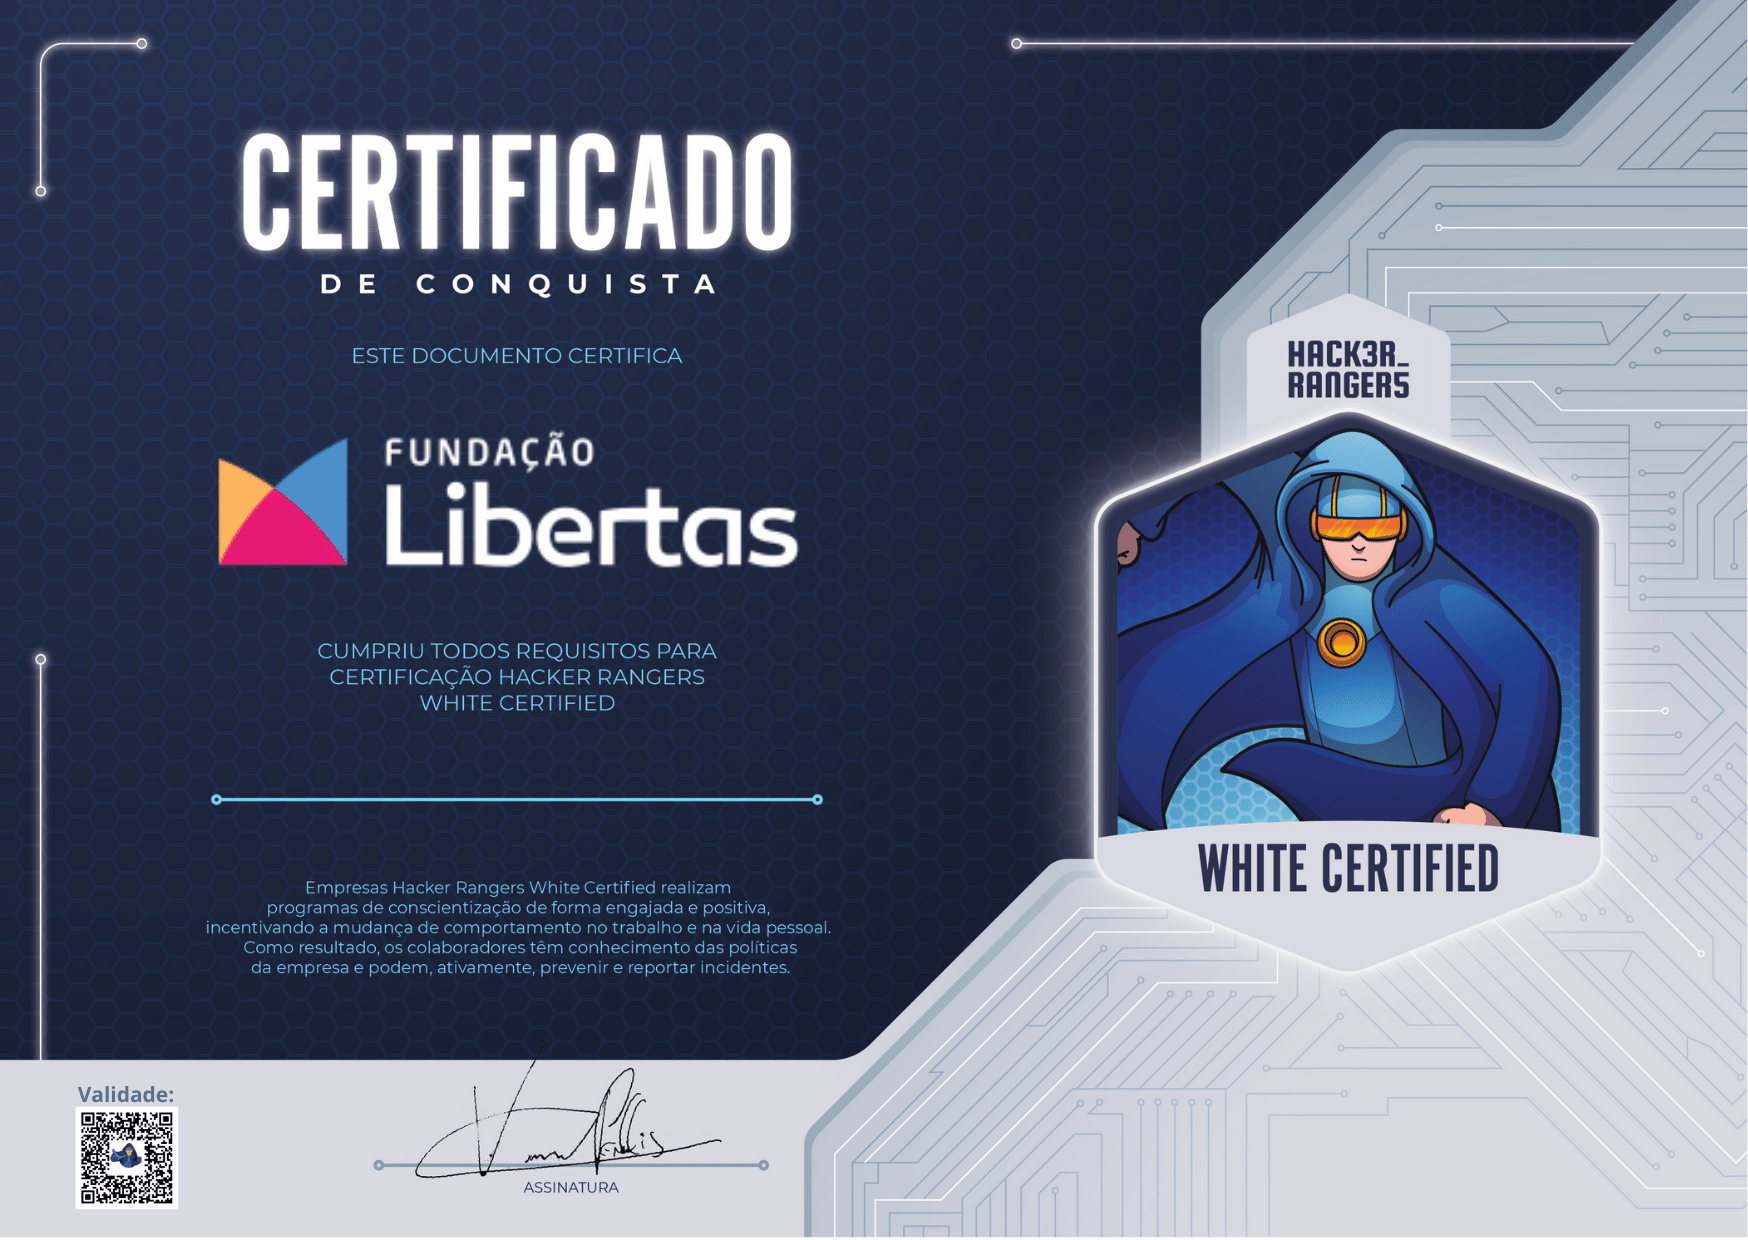 Fundação Libertas - Hacker Rangers White Certified